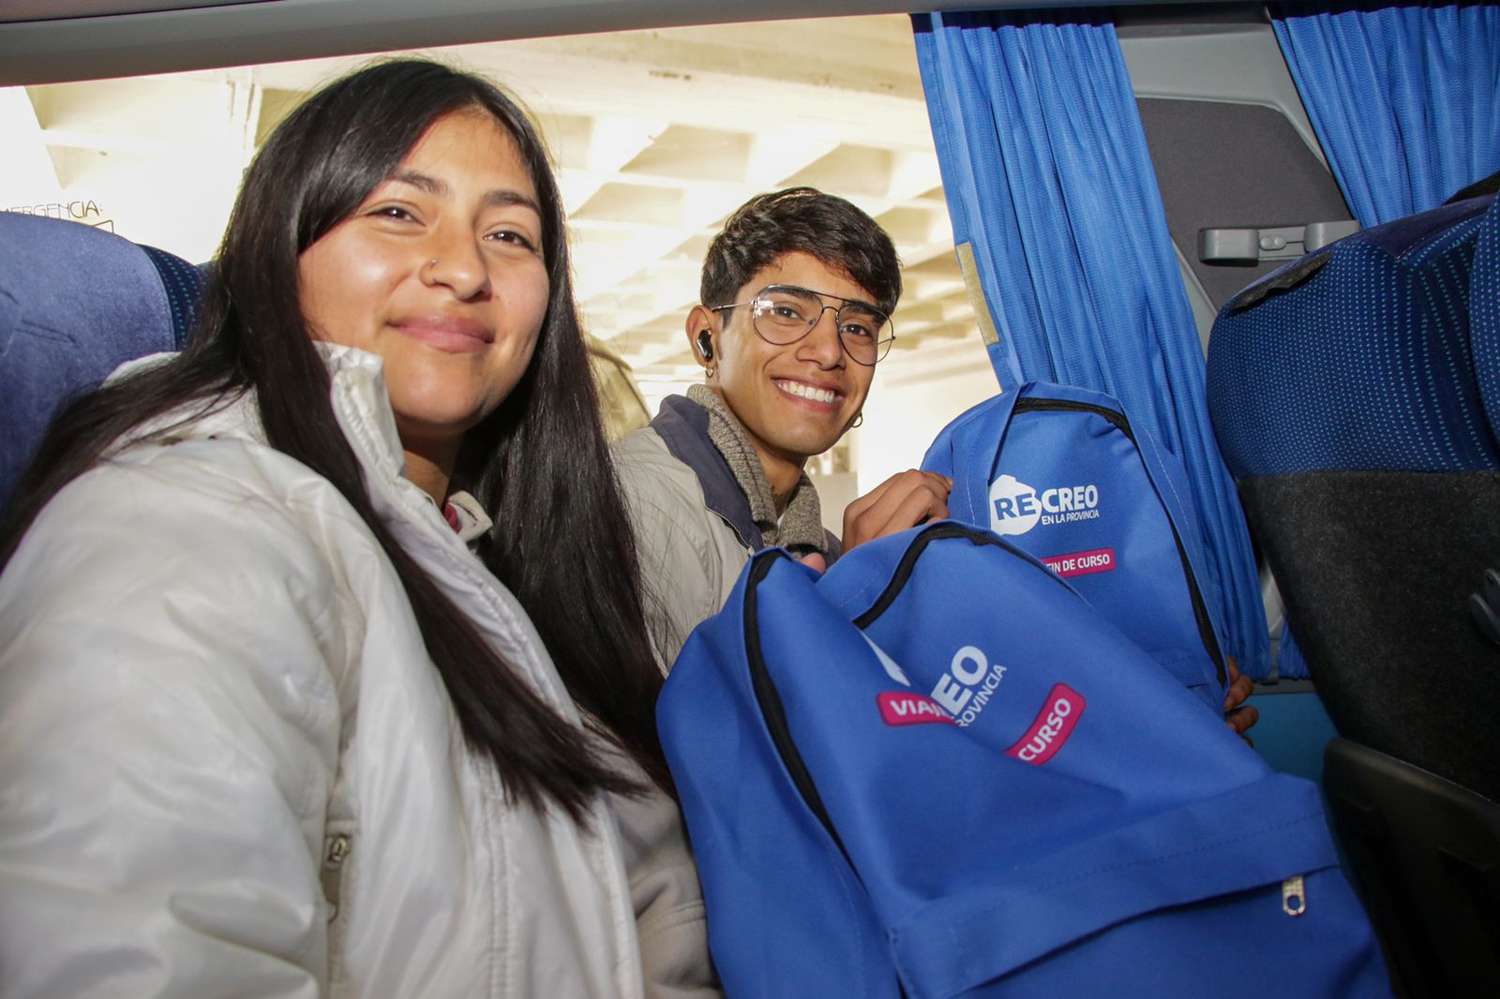 Viaje de Fin de Curso: 1500 estudiantes de Tandil viajarán a Mar del Plata